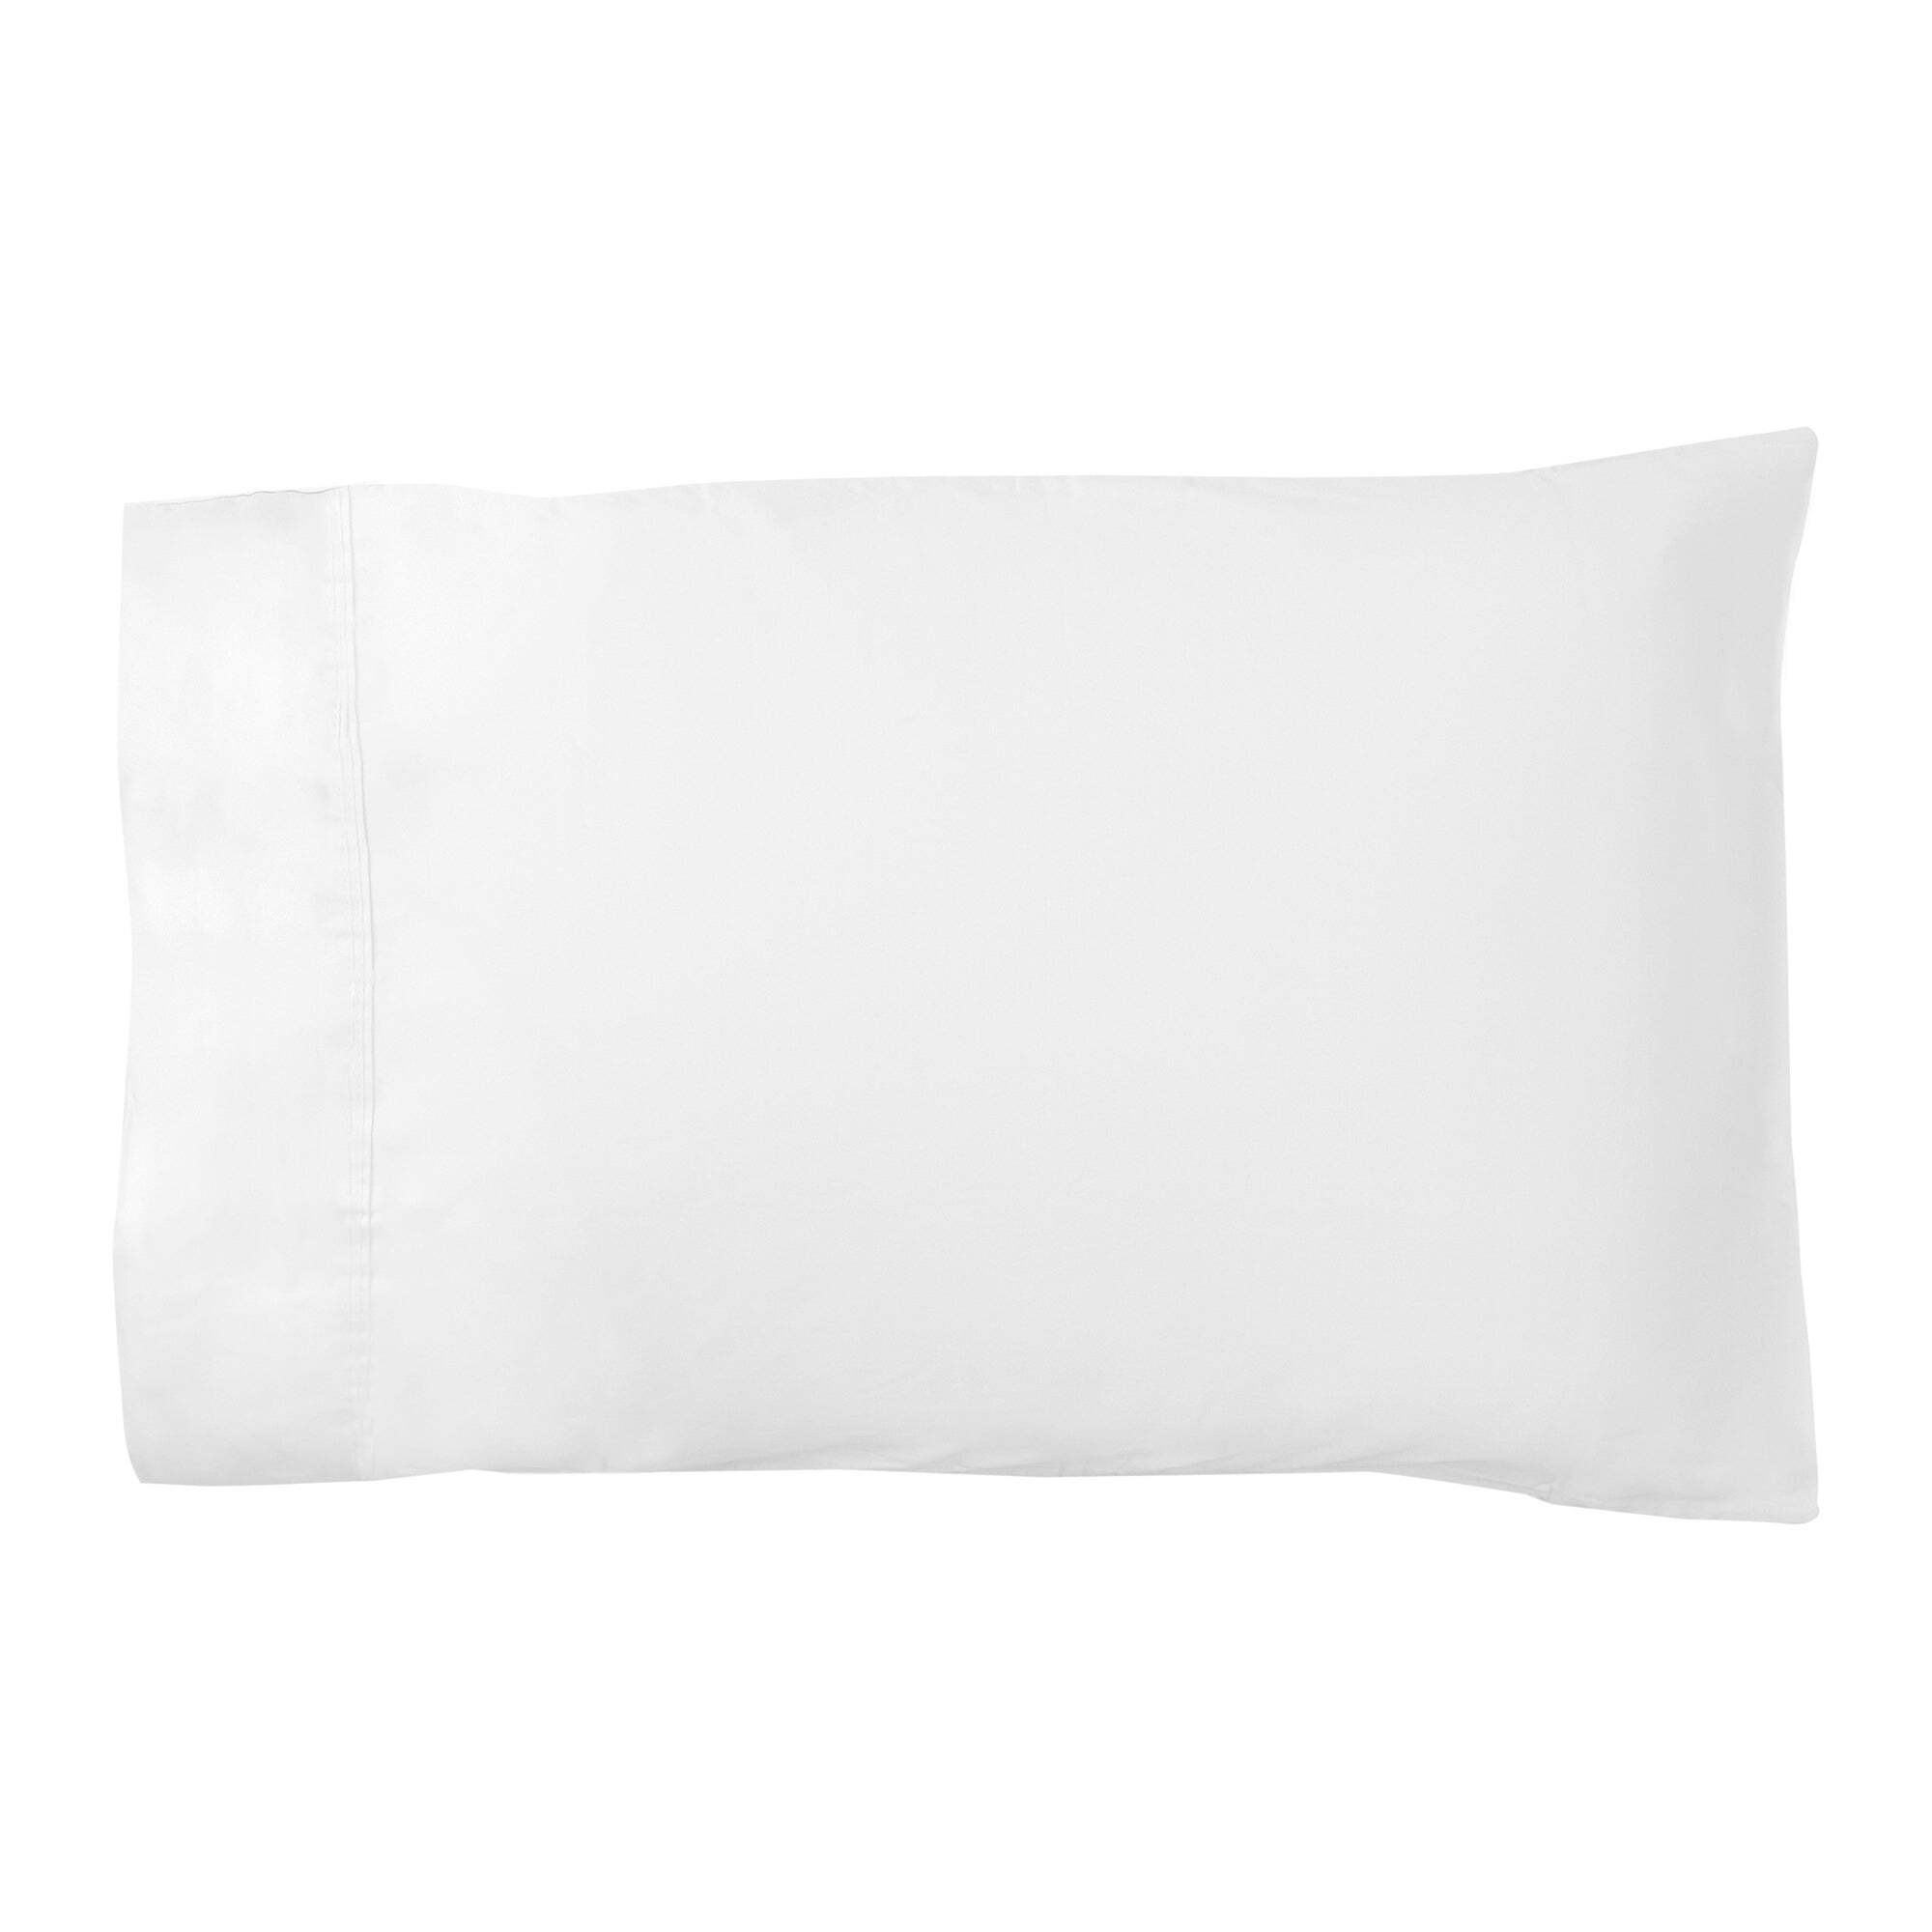 Dorma 500 Thread Count 100% Cotton Sateen Plain Cuffed Pillowcase White